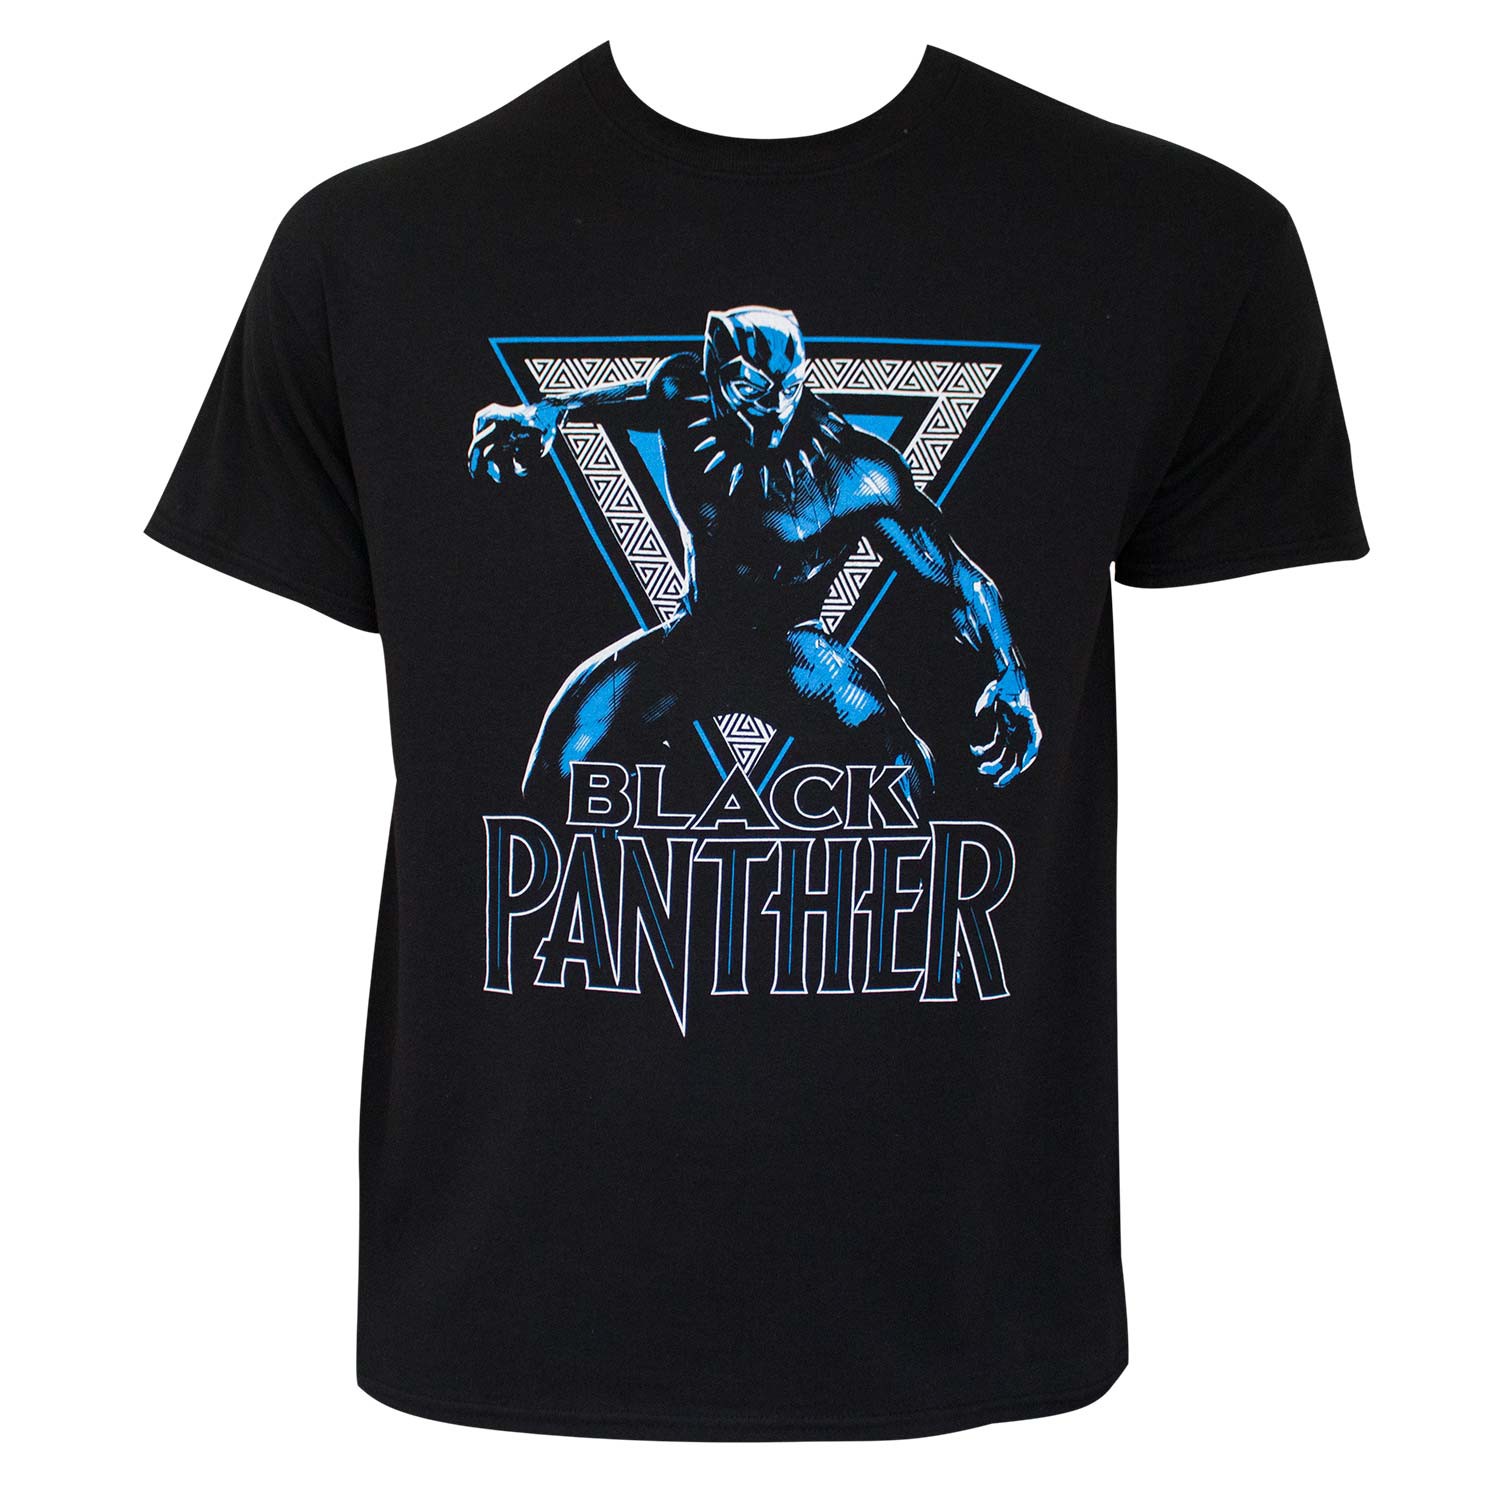 Black Panther Triangle Logo Black Tee Shirt